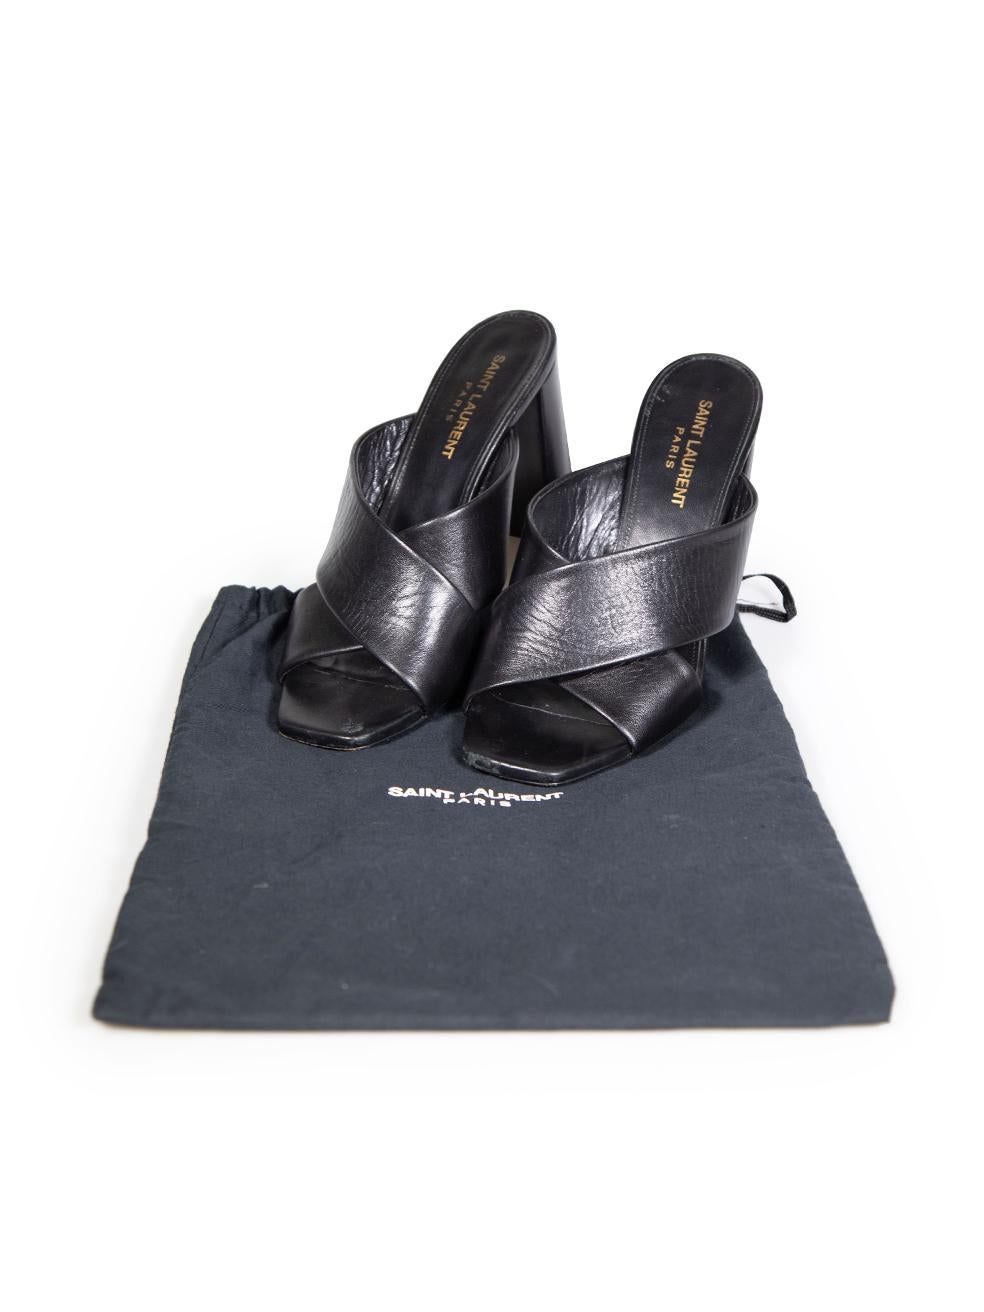 Saint Laurent Black Leather Loulou Sandals Size IT 38 4